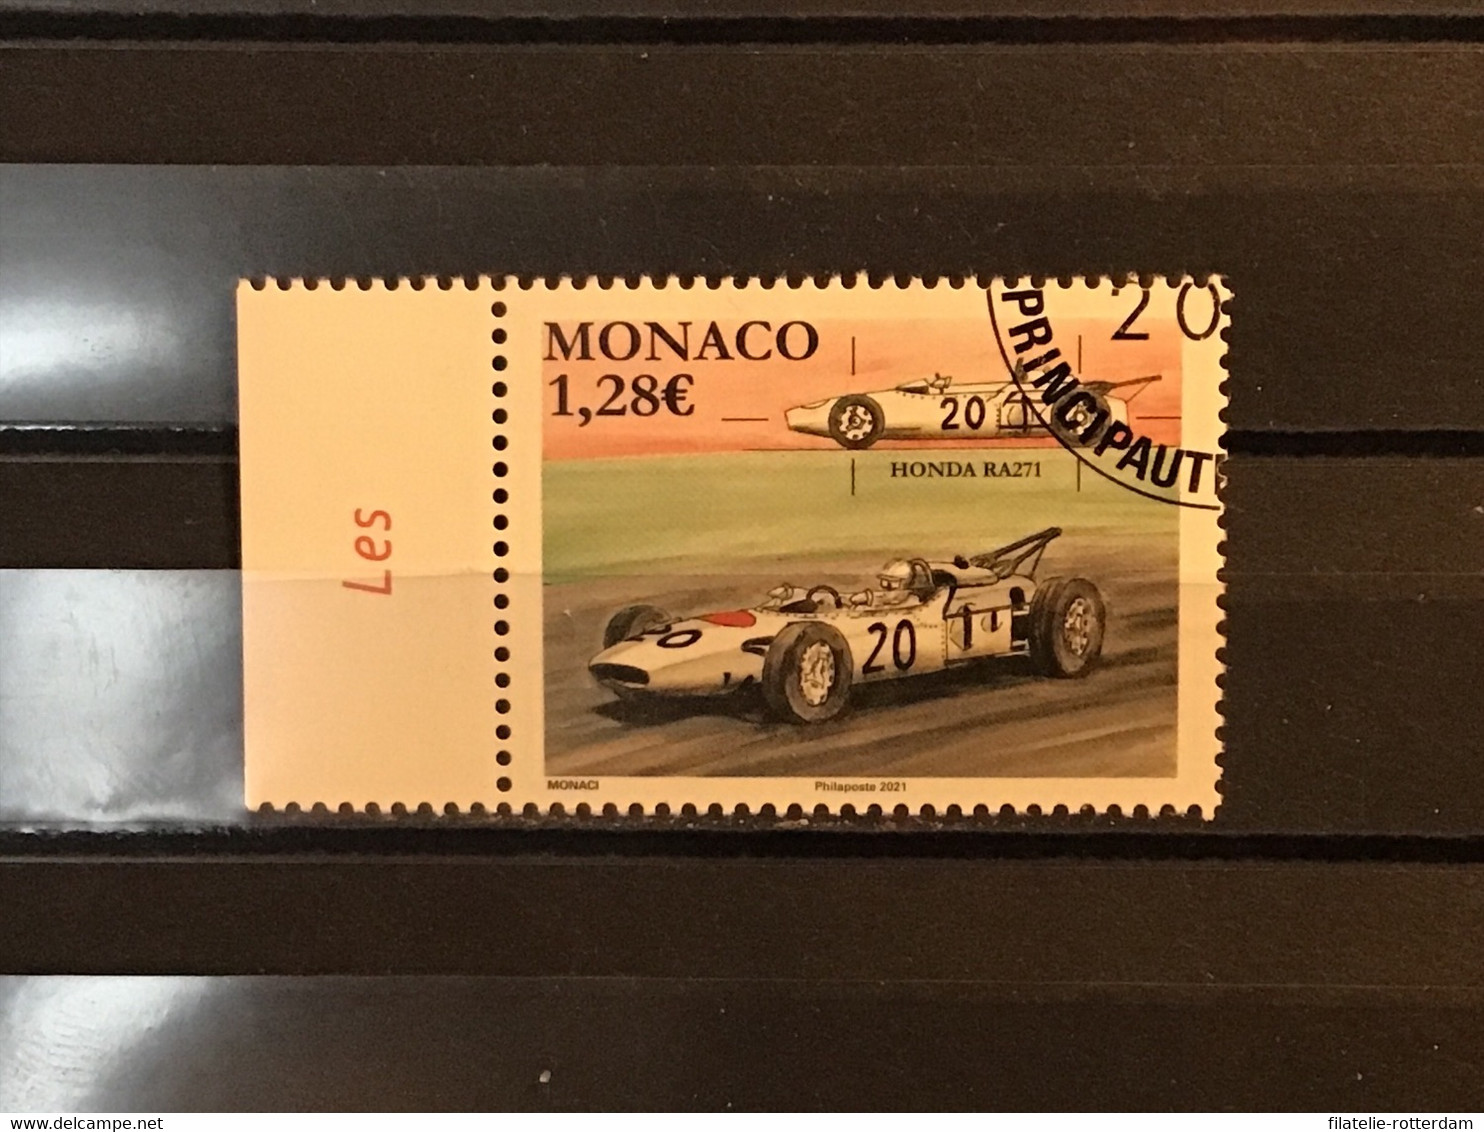 Monaco - Formule 1, Grand Prix Monaco (1.28) 2021 - Used Stamps